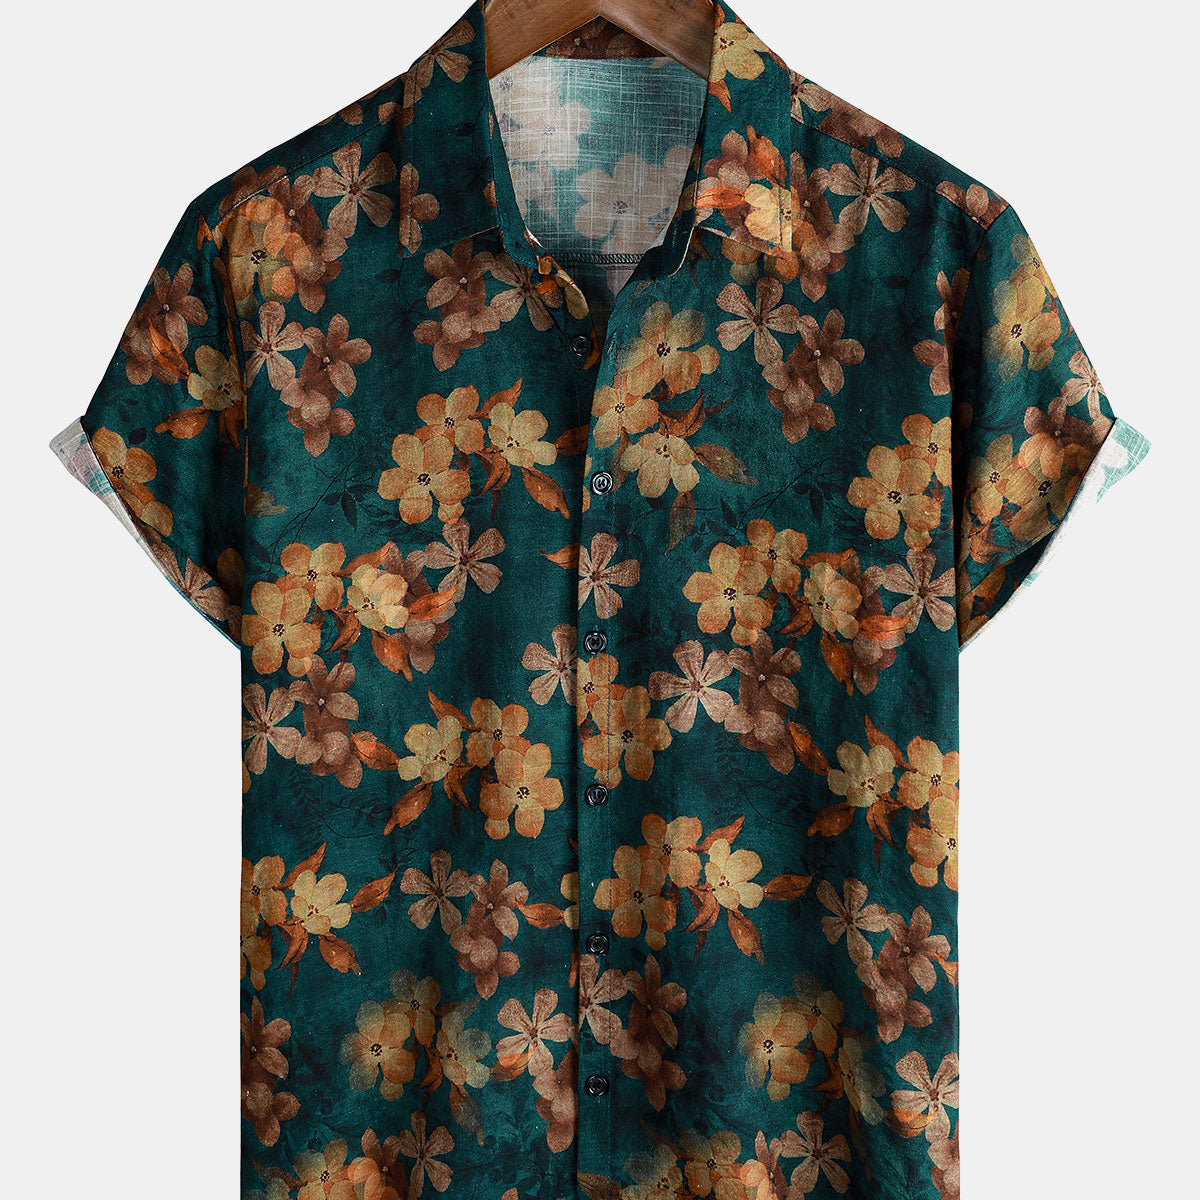 Men's Summer Floral Green Short Sleeve Button Up Shirt